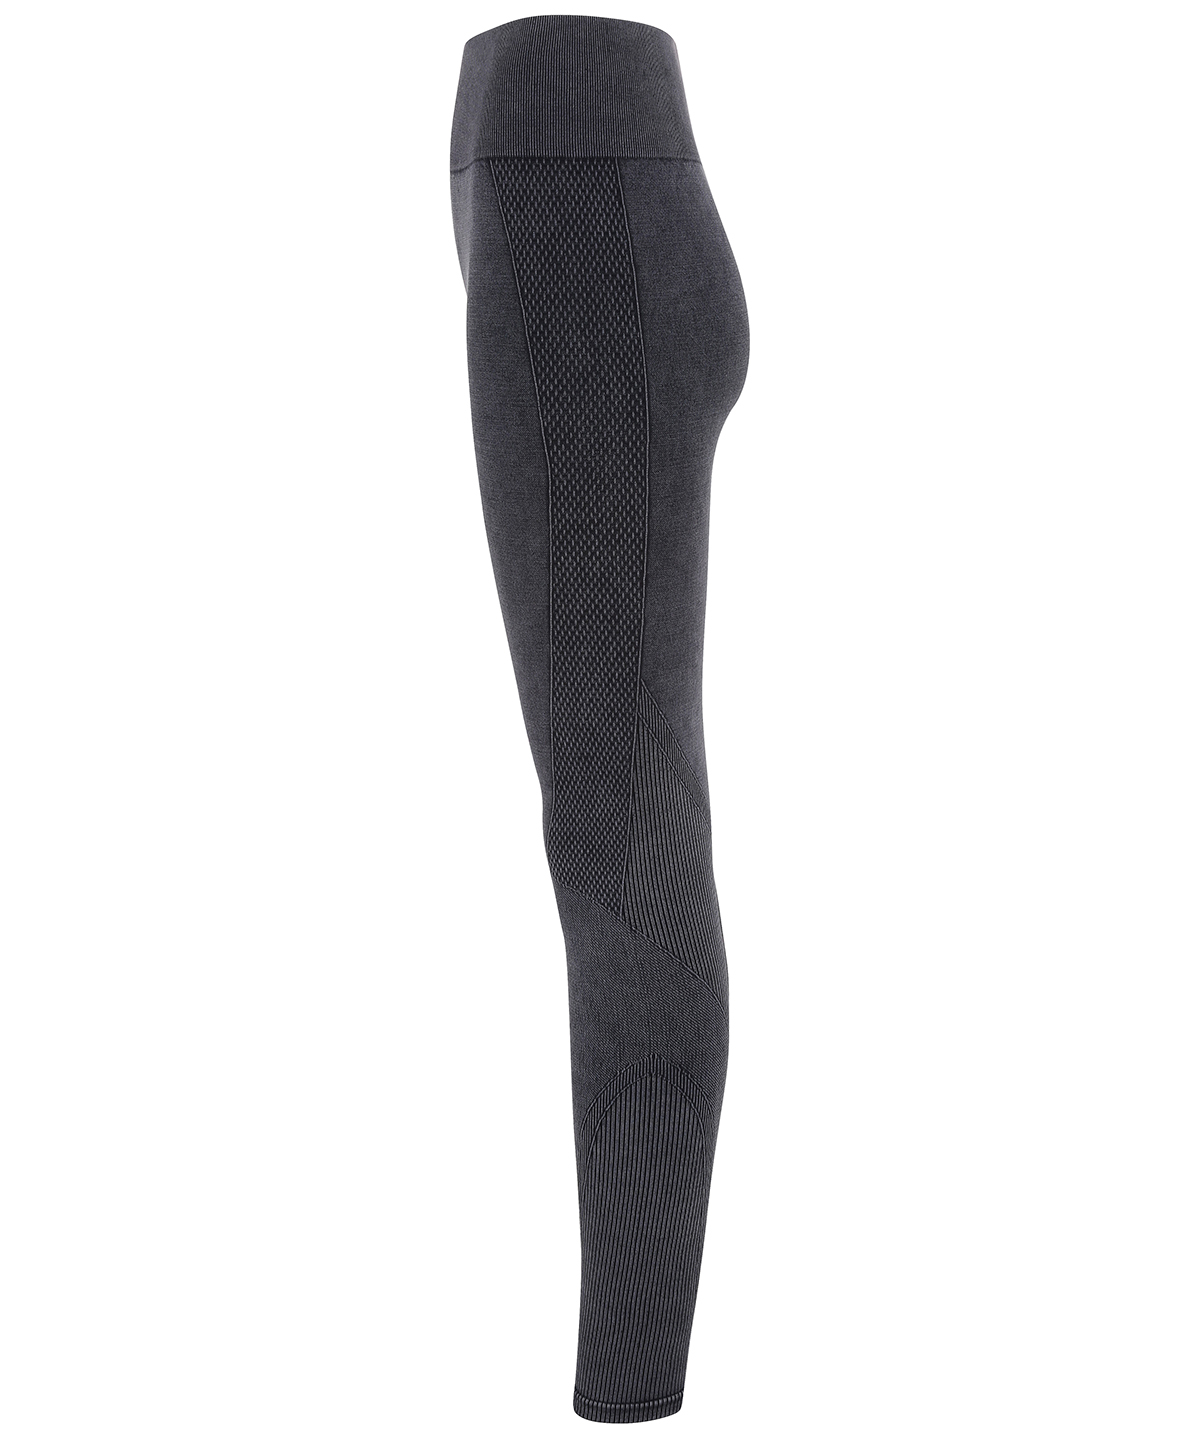 Leggings - Women's TriDri® Seamless '3D Fit' Multi-sport Denim Look Leggings  TR305